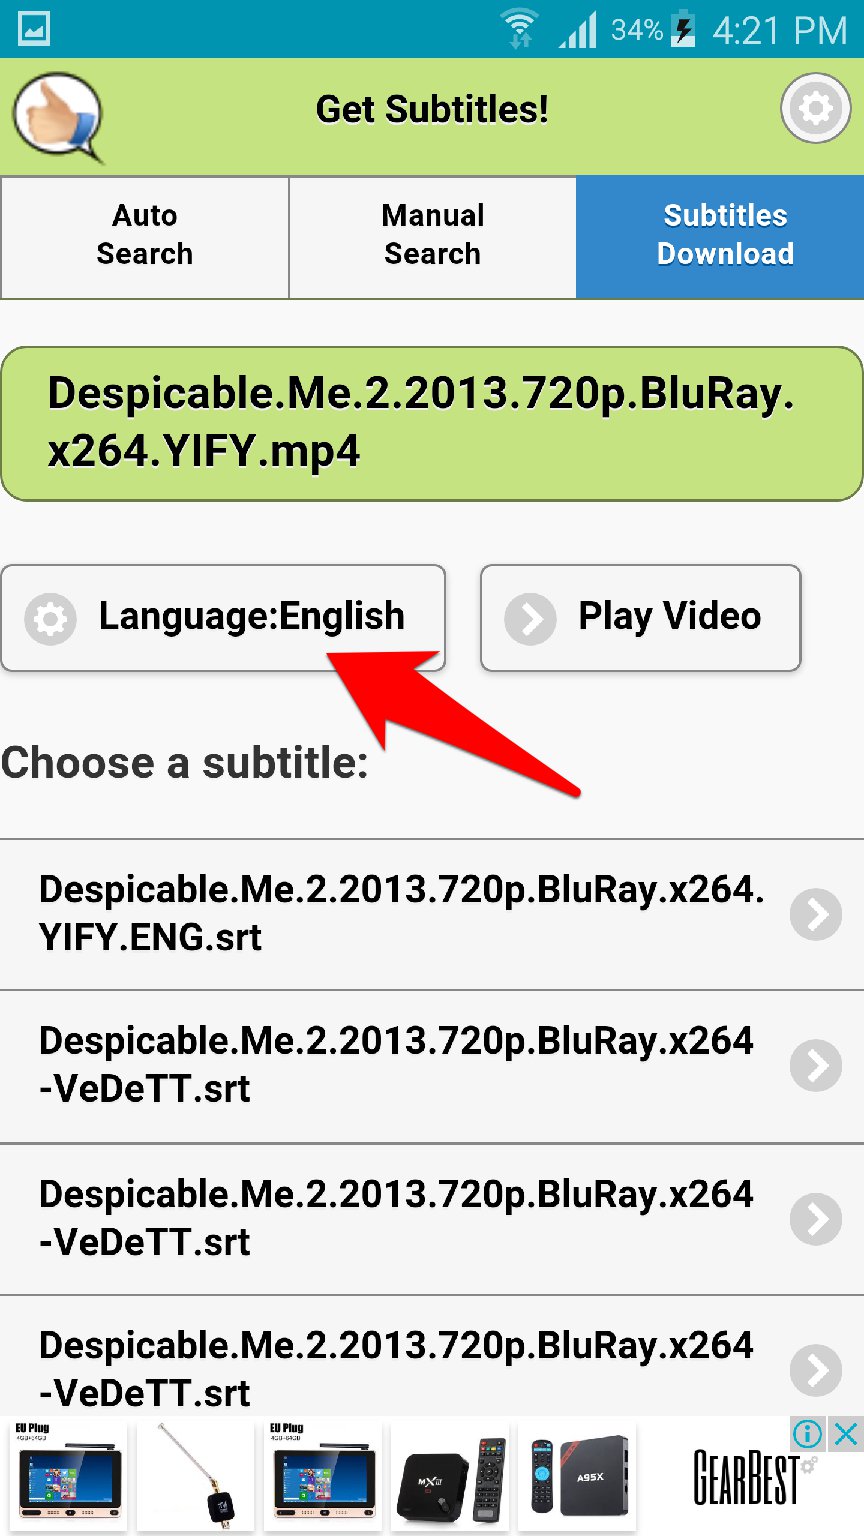 تطبيق Get Subtitles لتحميل ترجمة الافلام والمسلسلات الاجنبية للاندرويد | بحرية درويد